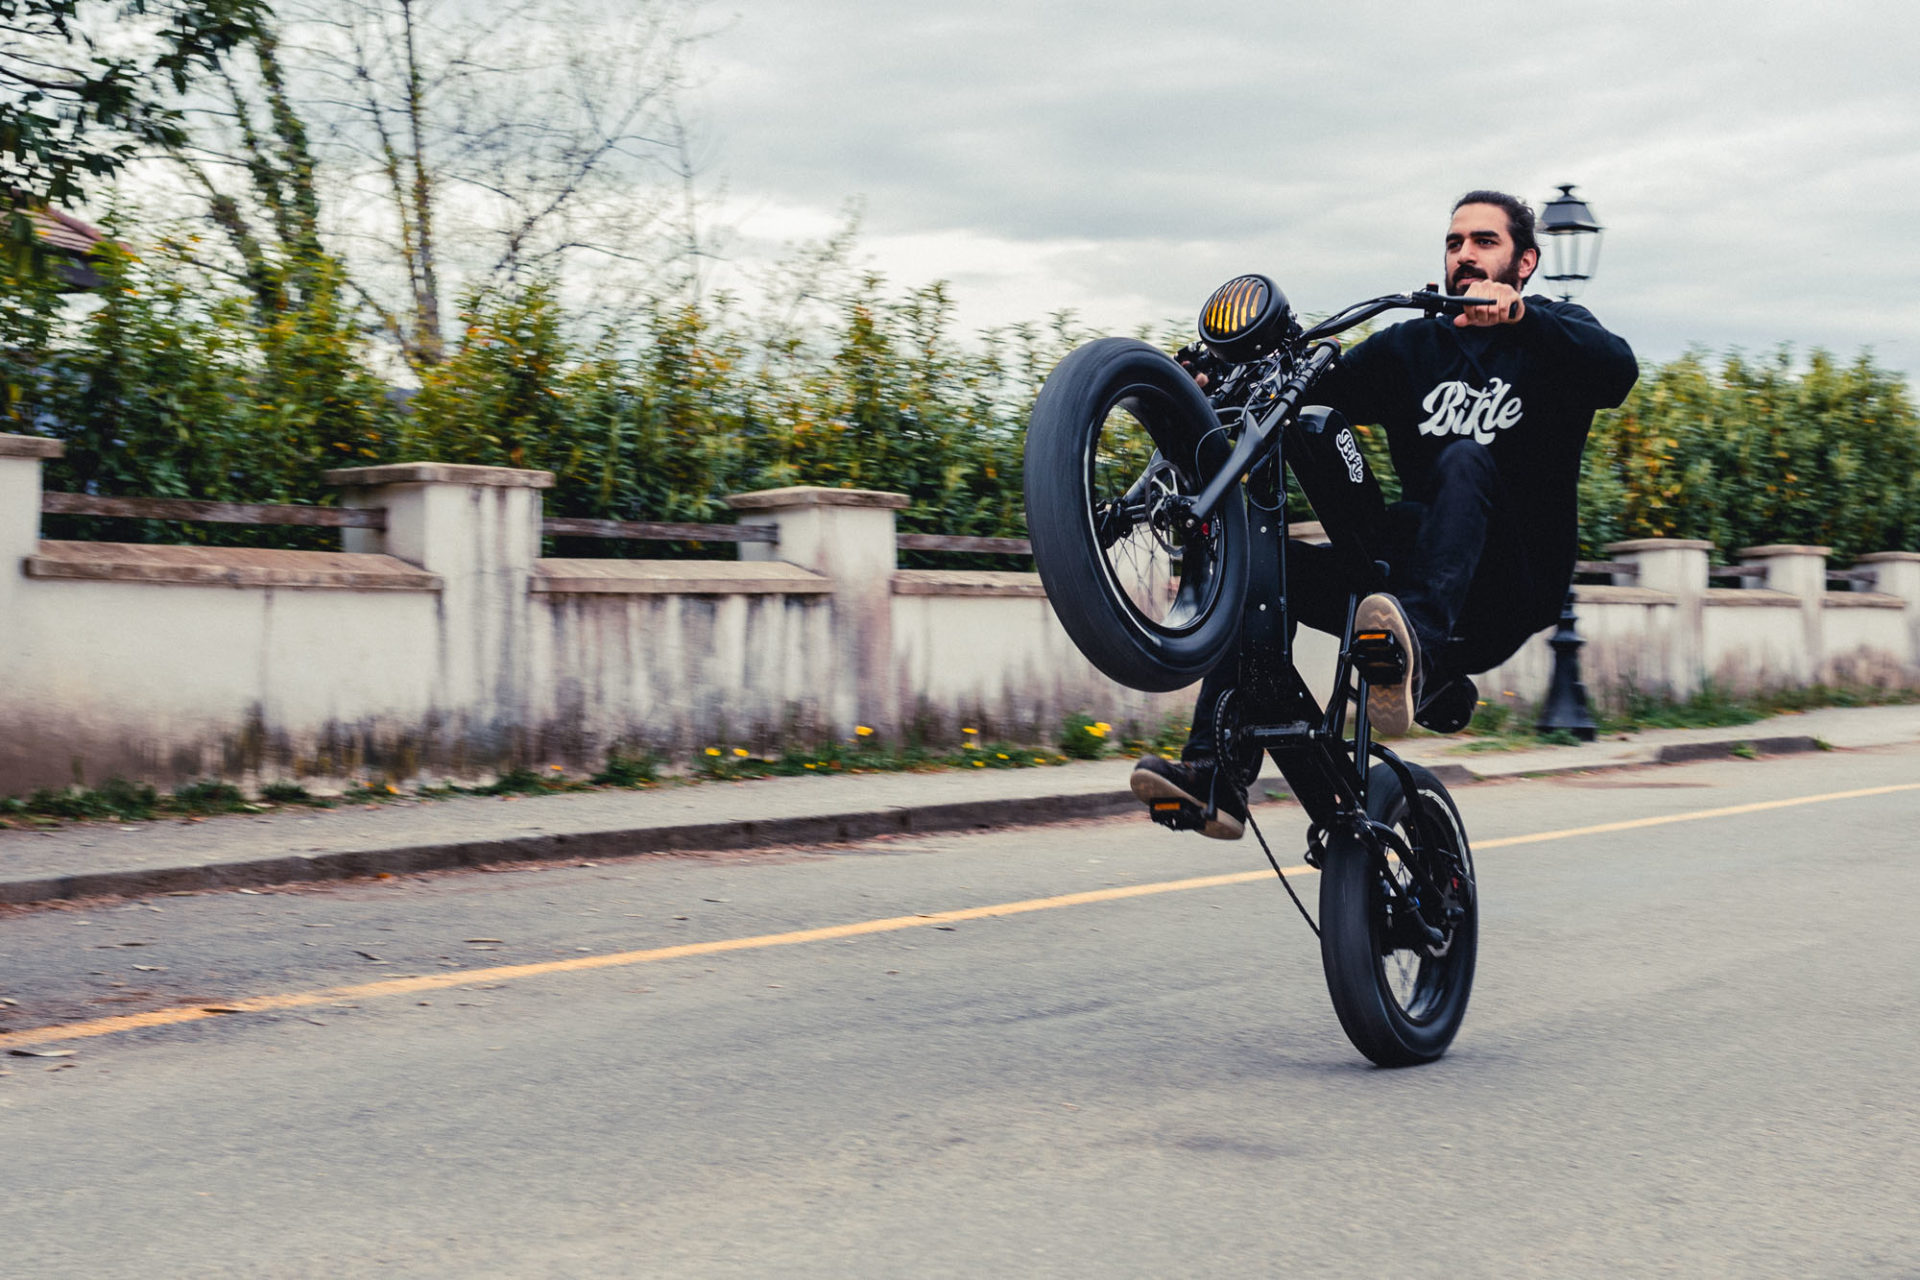 photo d'une personne faisant une roue arrière avec un vélo électrique noir ressemblant à une vieille moto